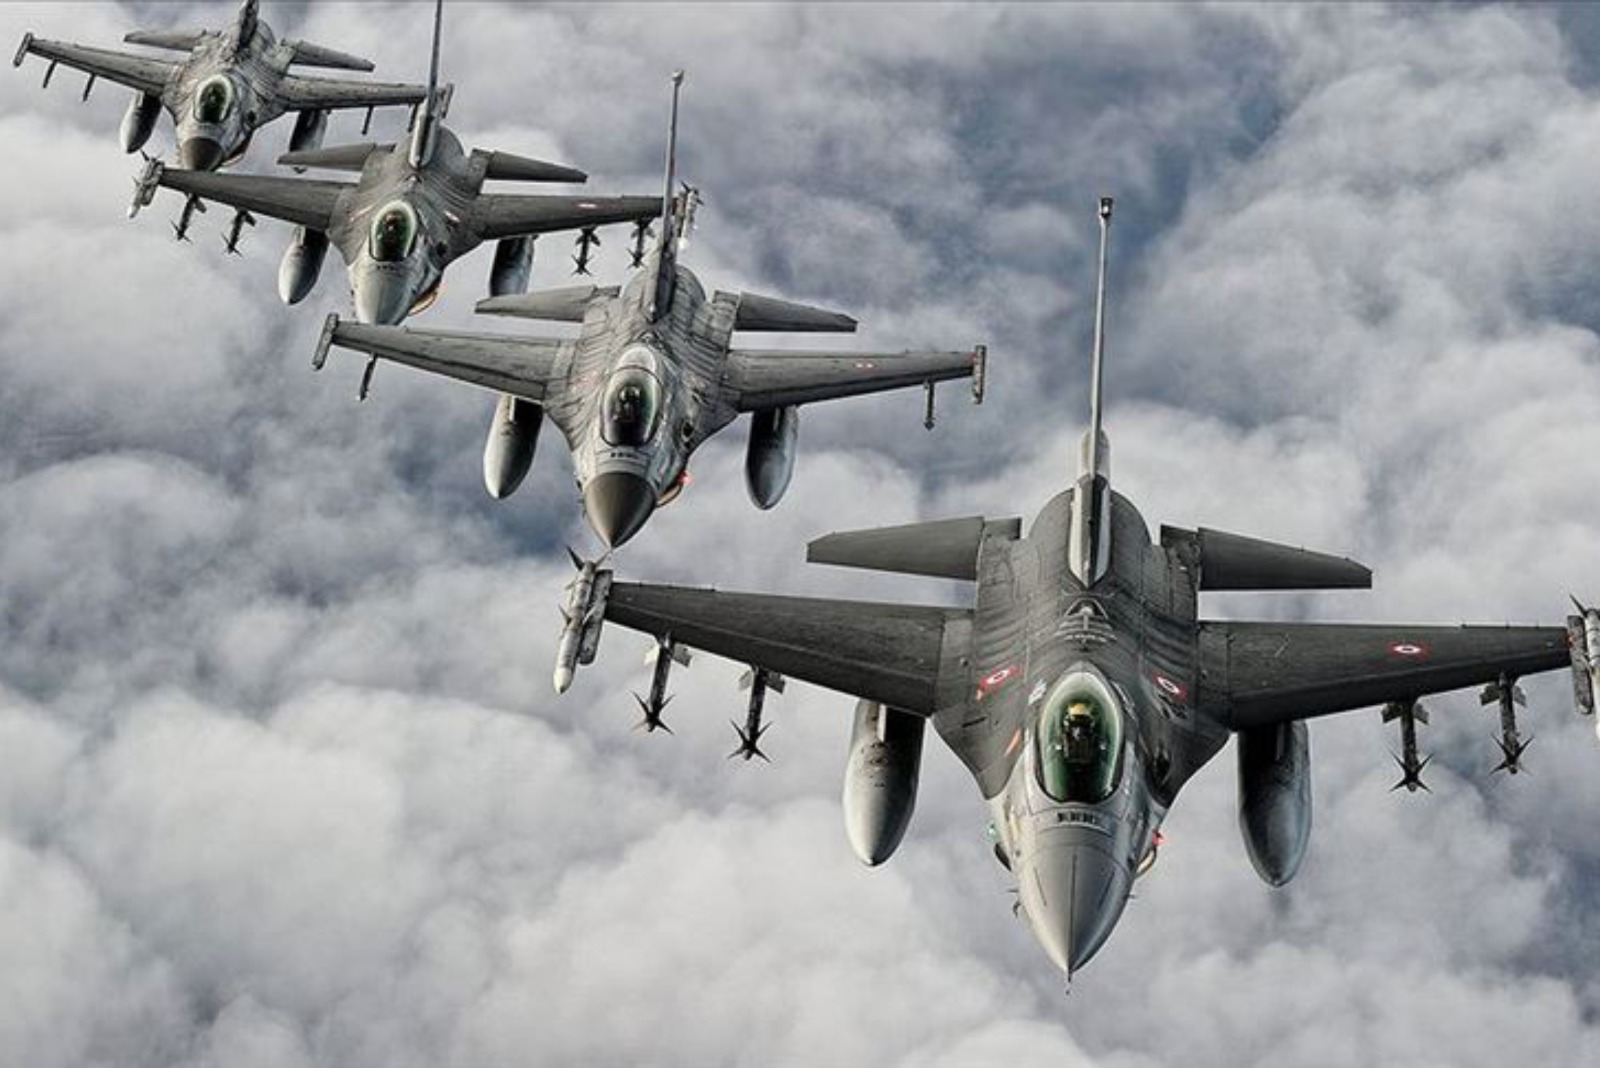 Την αναβάθμιση 79 F-16 και την αγορά 40 νέων ζητά η Τουρκία  από τις ΗΠΑ